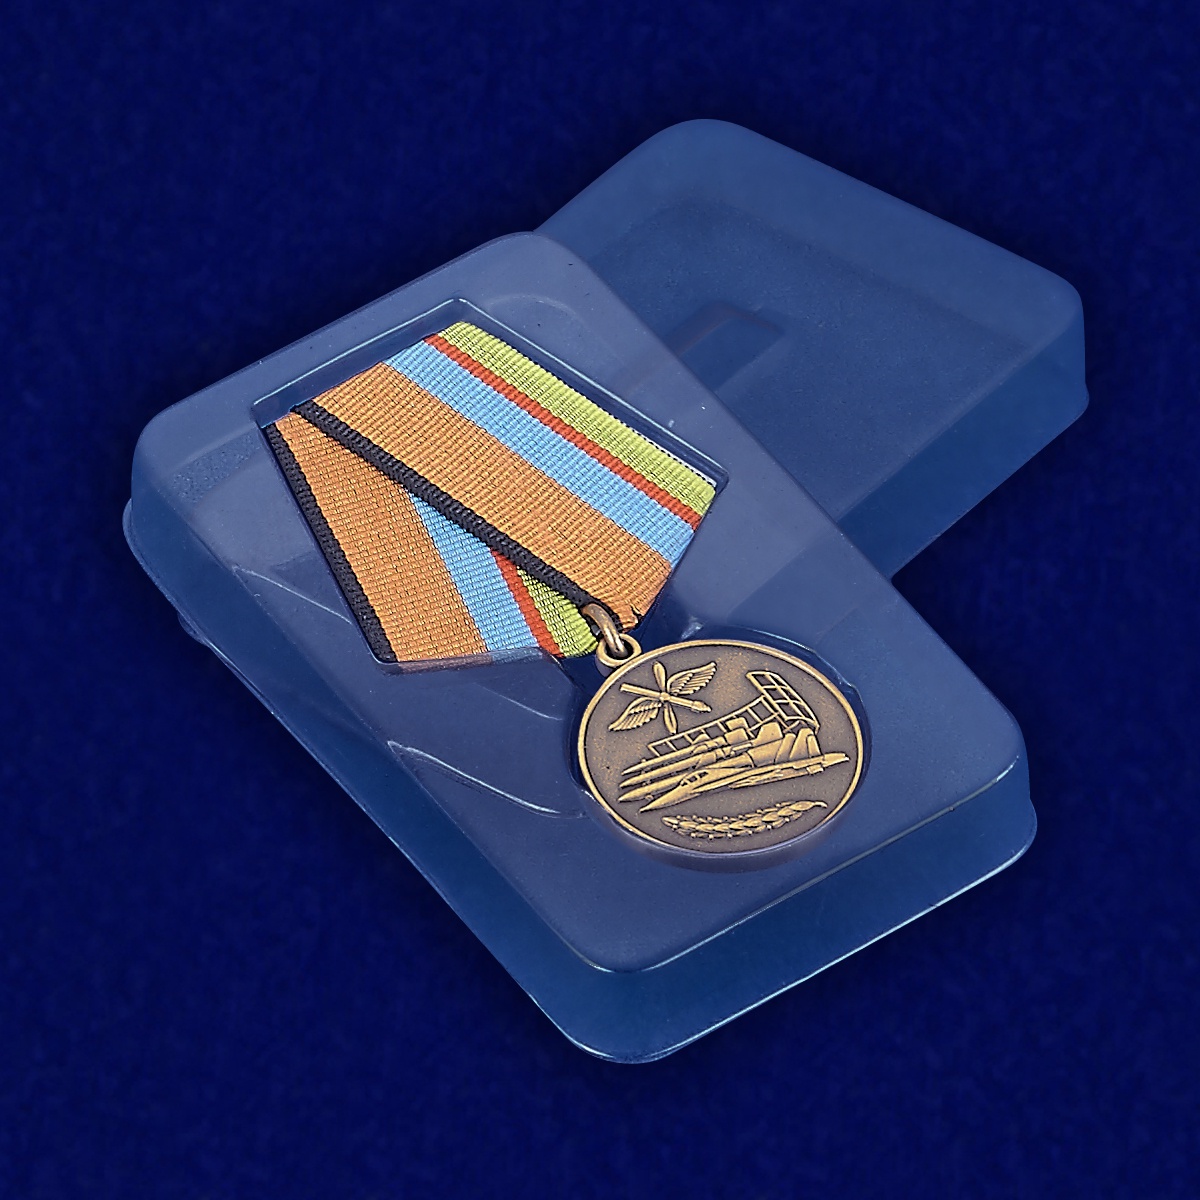 Медаль «За службу в Военно-воздушных силах»  МО РФ 